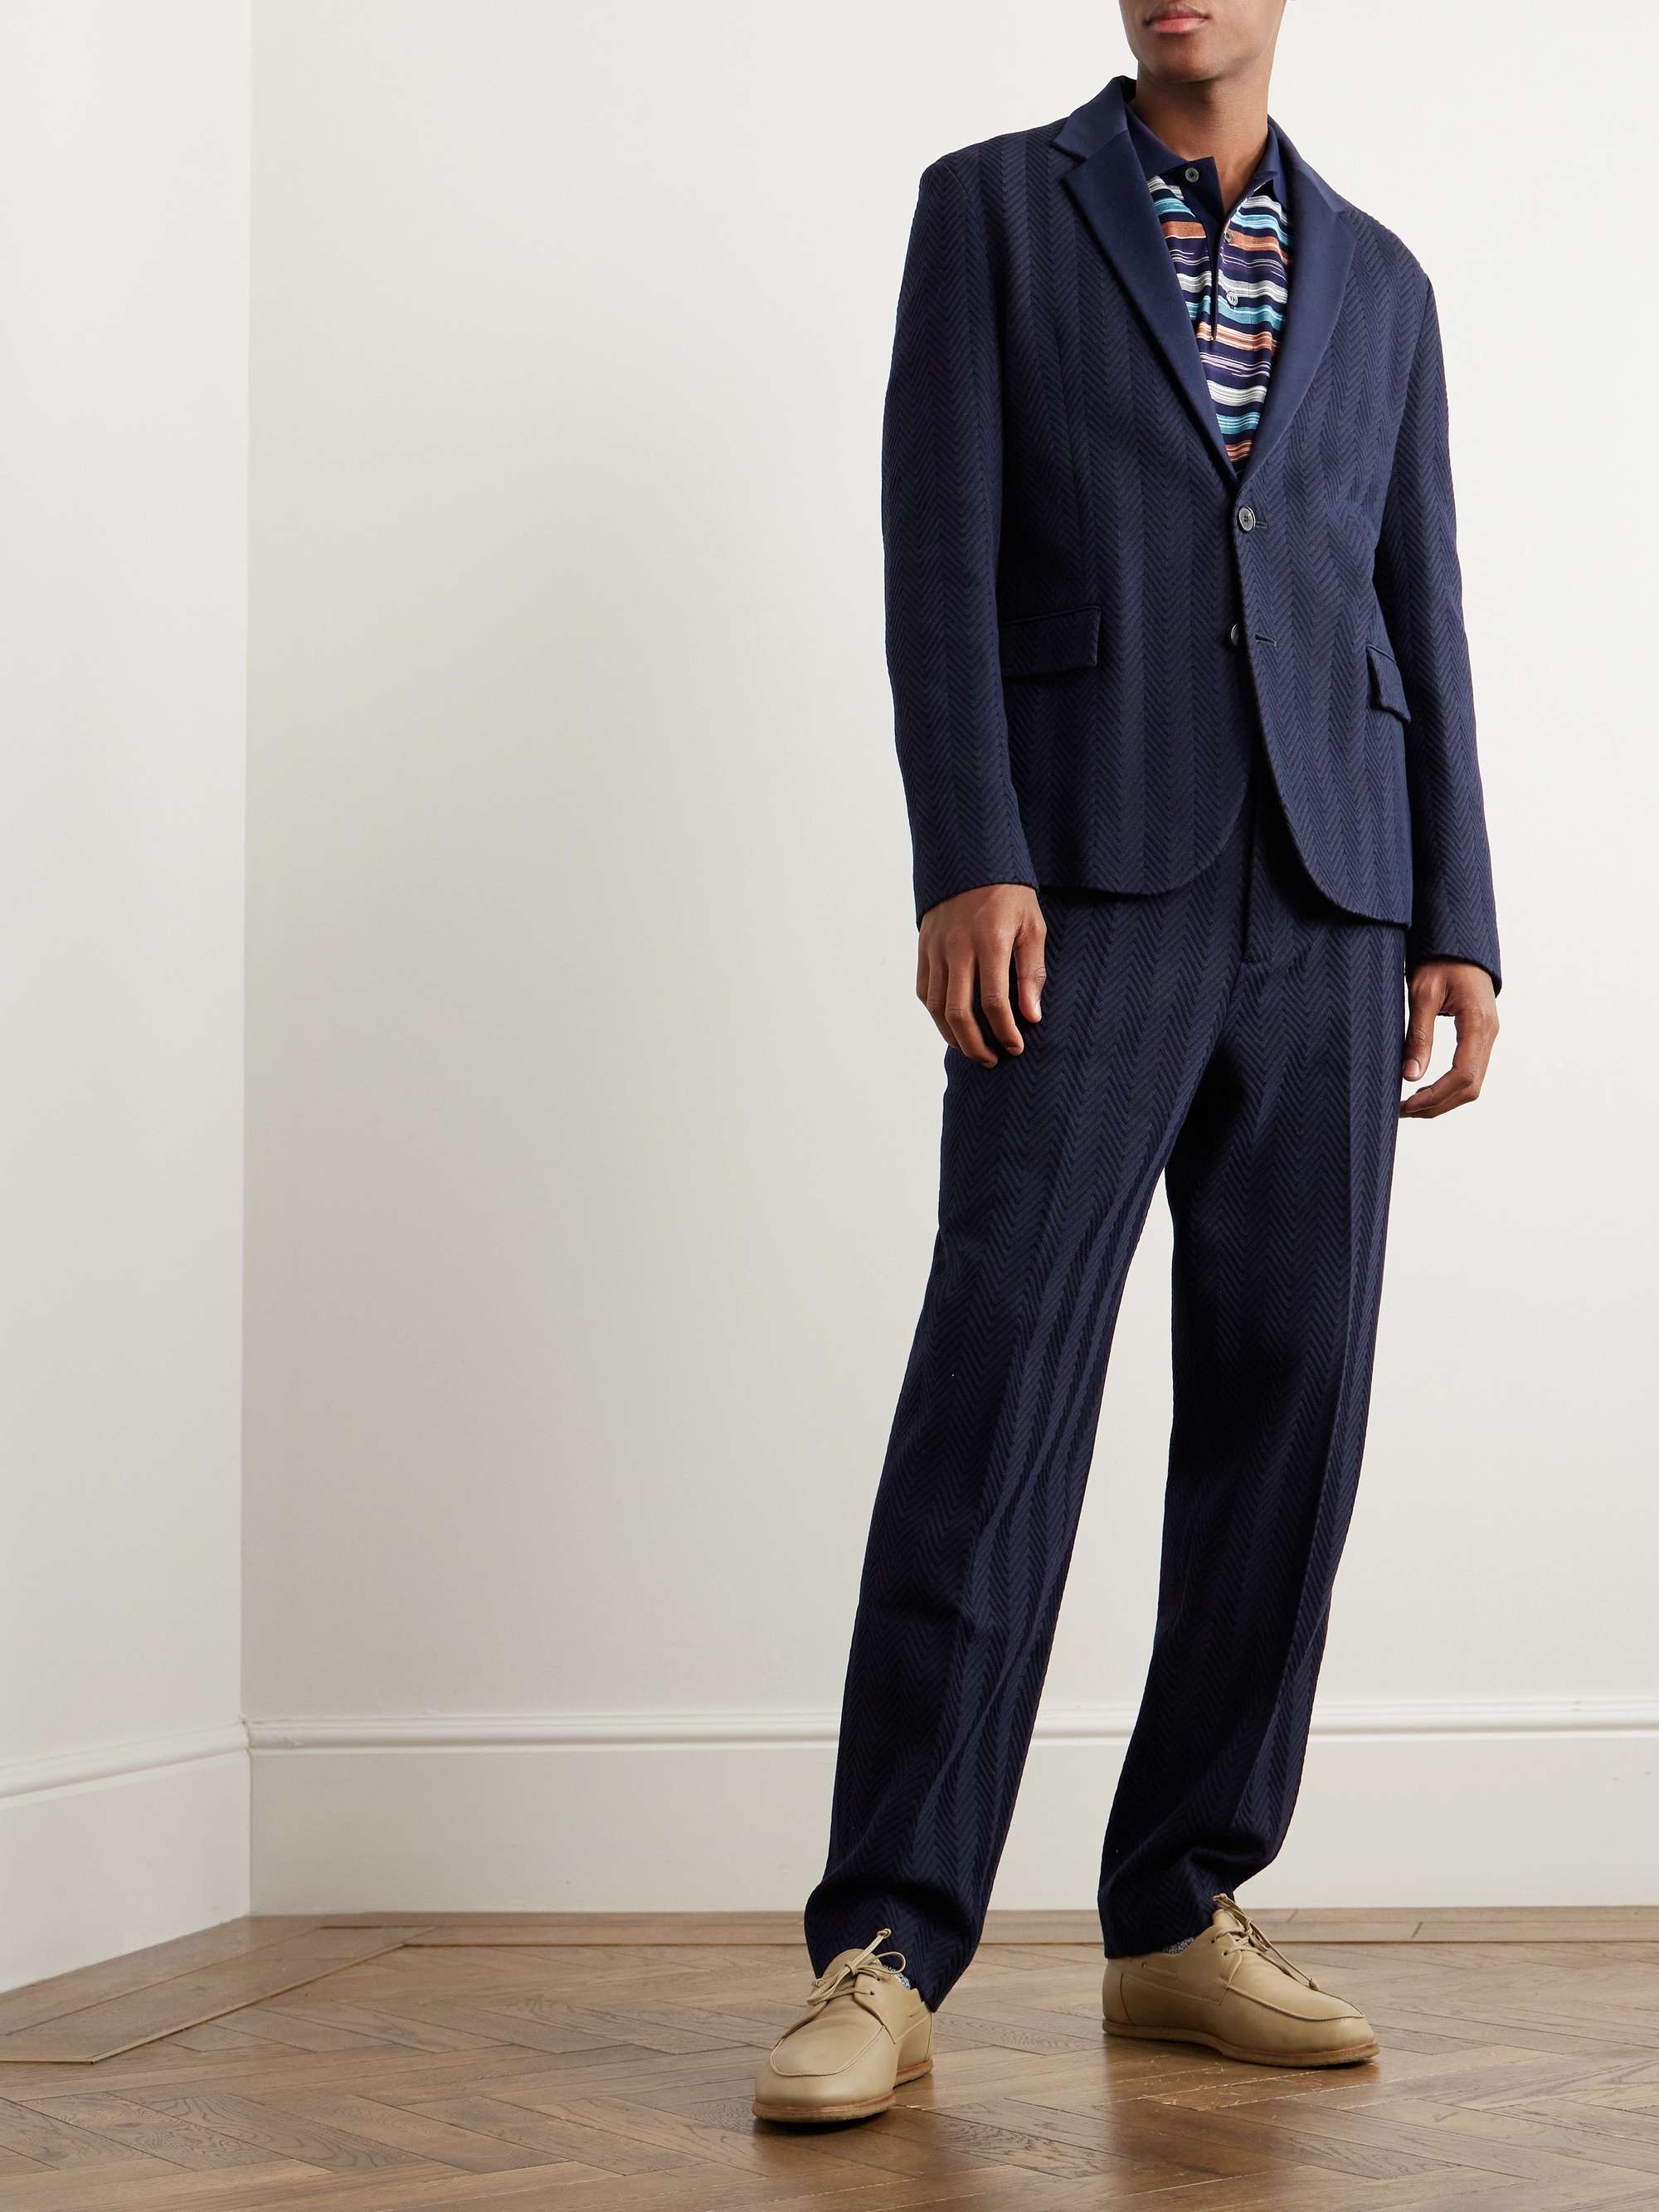 MISSONI Zigzag Cotton-Blend Jacquard Suit Jacket for Men | MR PORTER